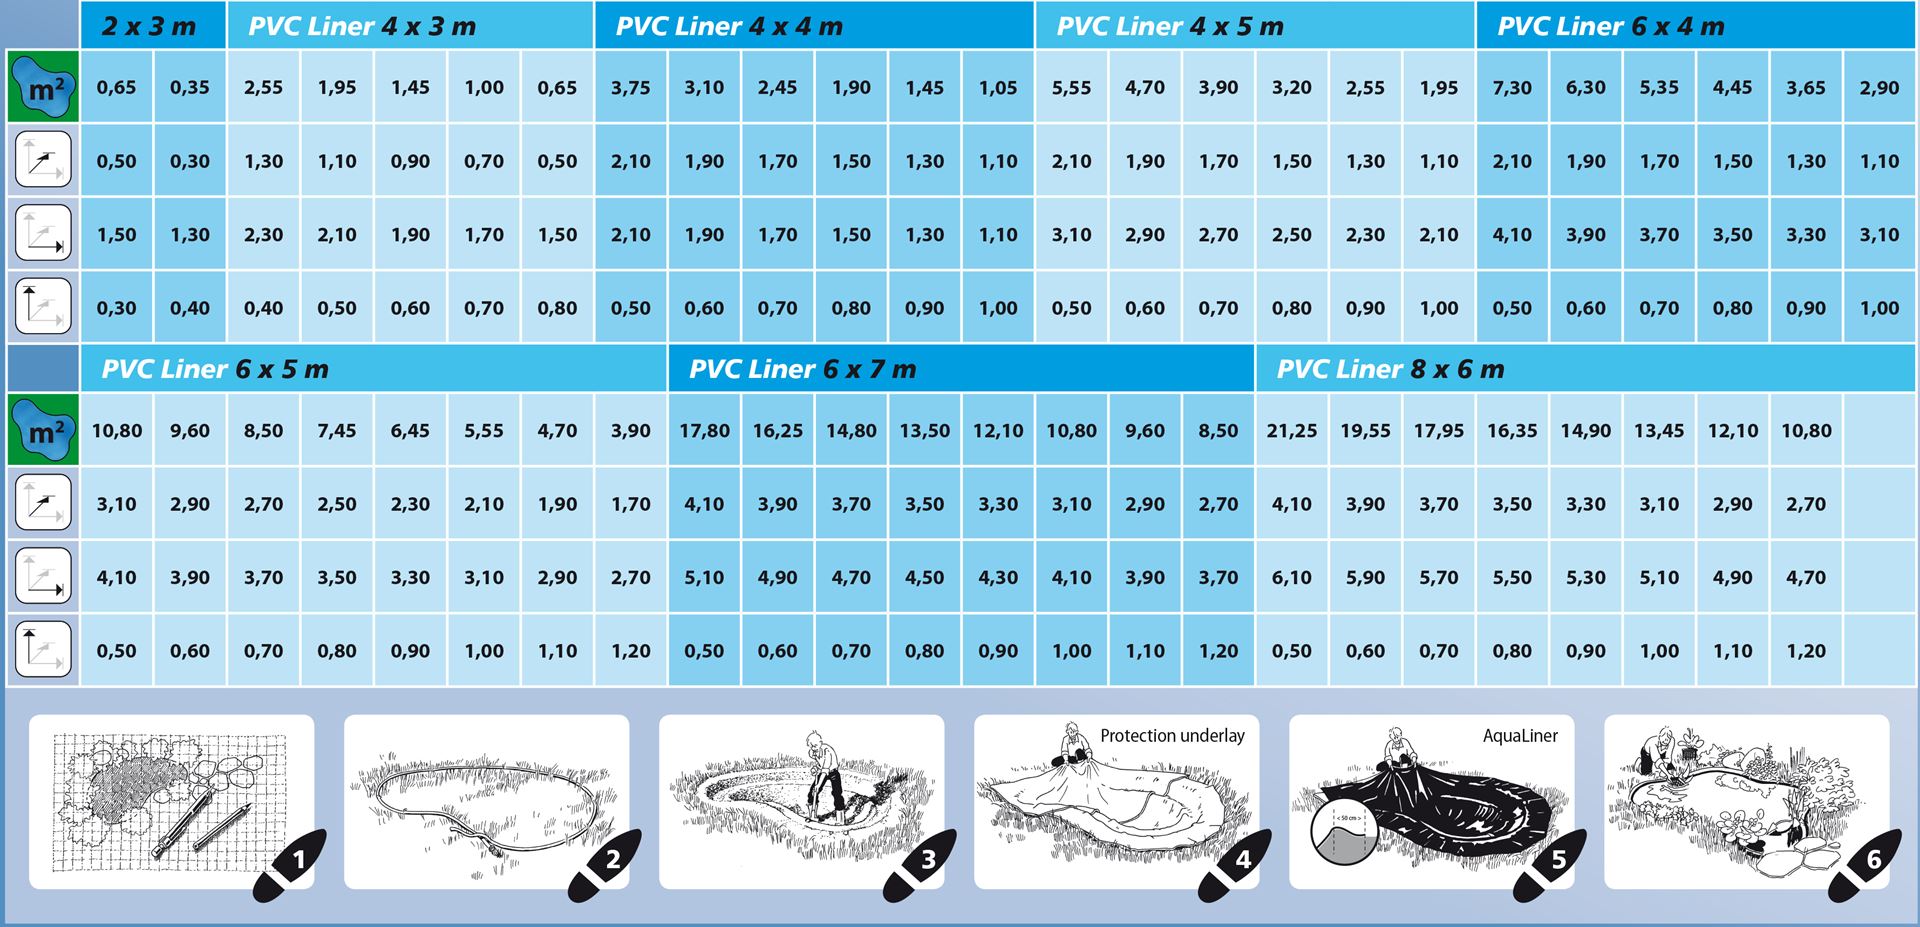 AquaLiner-vijverfolie-PVC-voorverpakt-sterkte-0-5mm-6-x-5-m